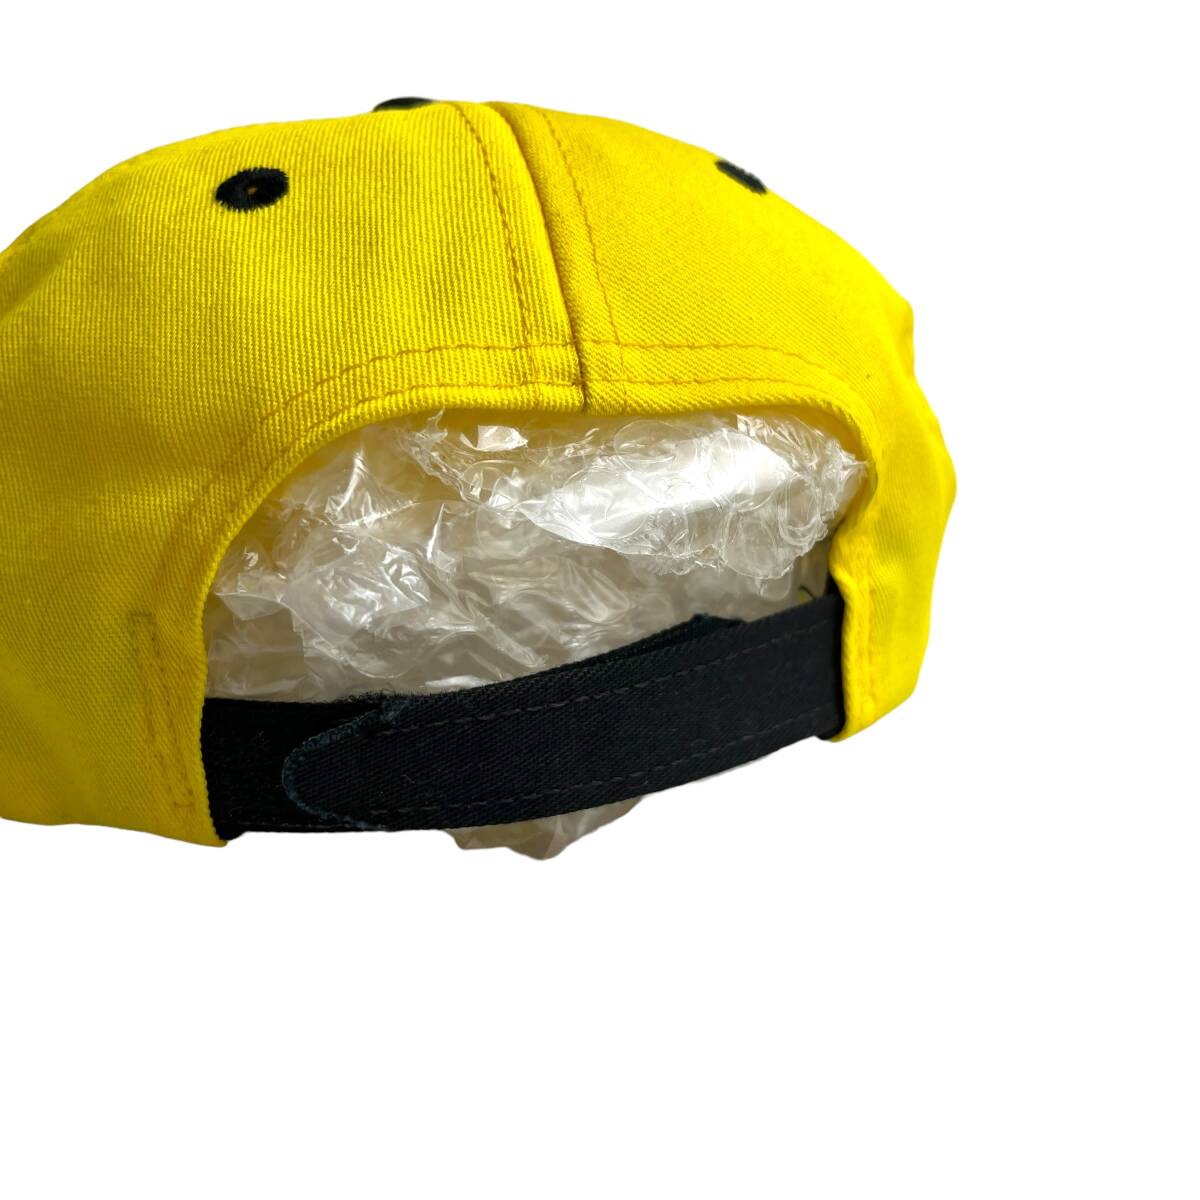 【キャップ/帽子】PENNZOIL (ペンゾイル) トラッカーキャップ ツートンカラー 刺繍ロゴ イエロー ブラック 黄色 黒